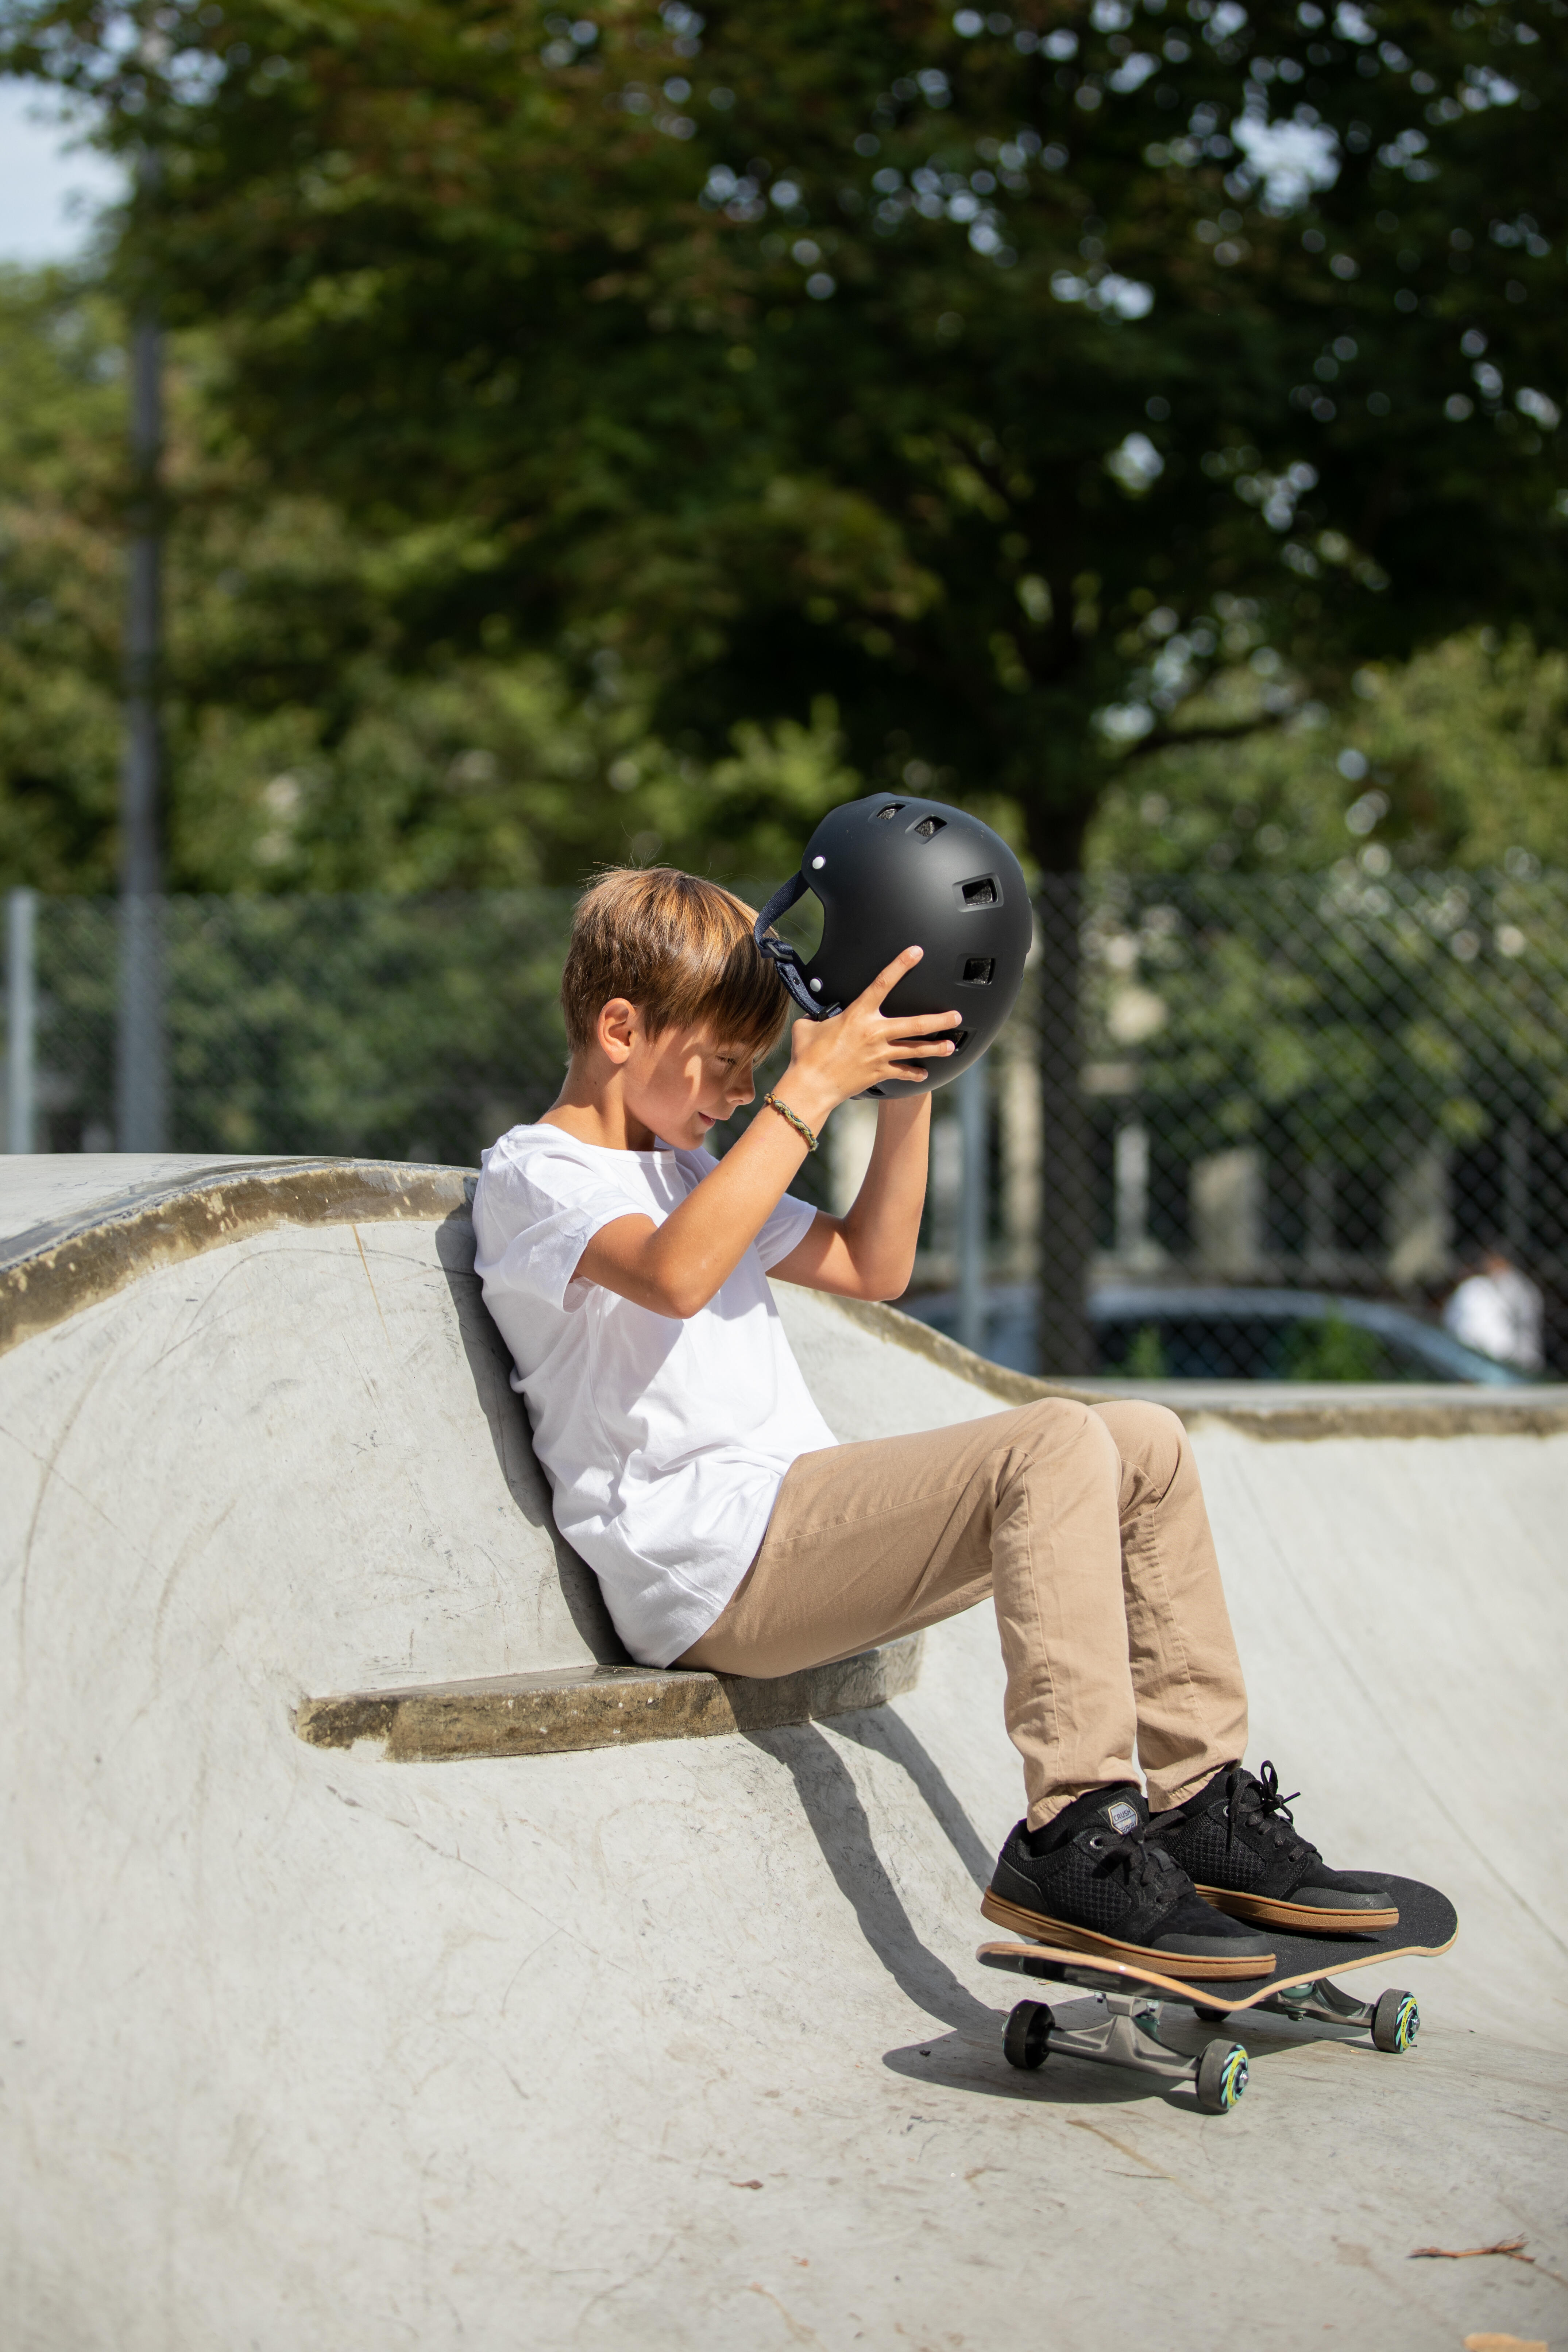 Kids’ Skateboard - CP 100 Blue - OXELO